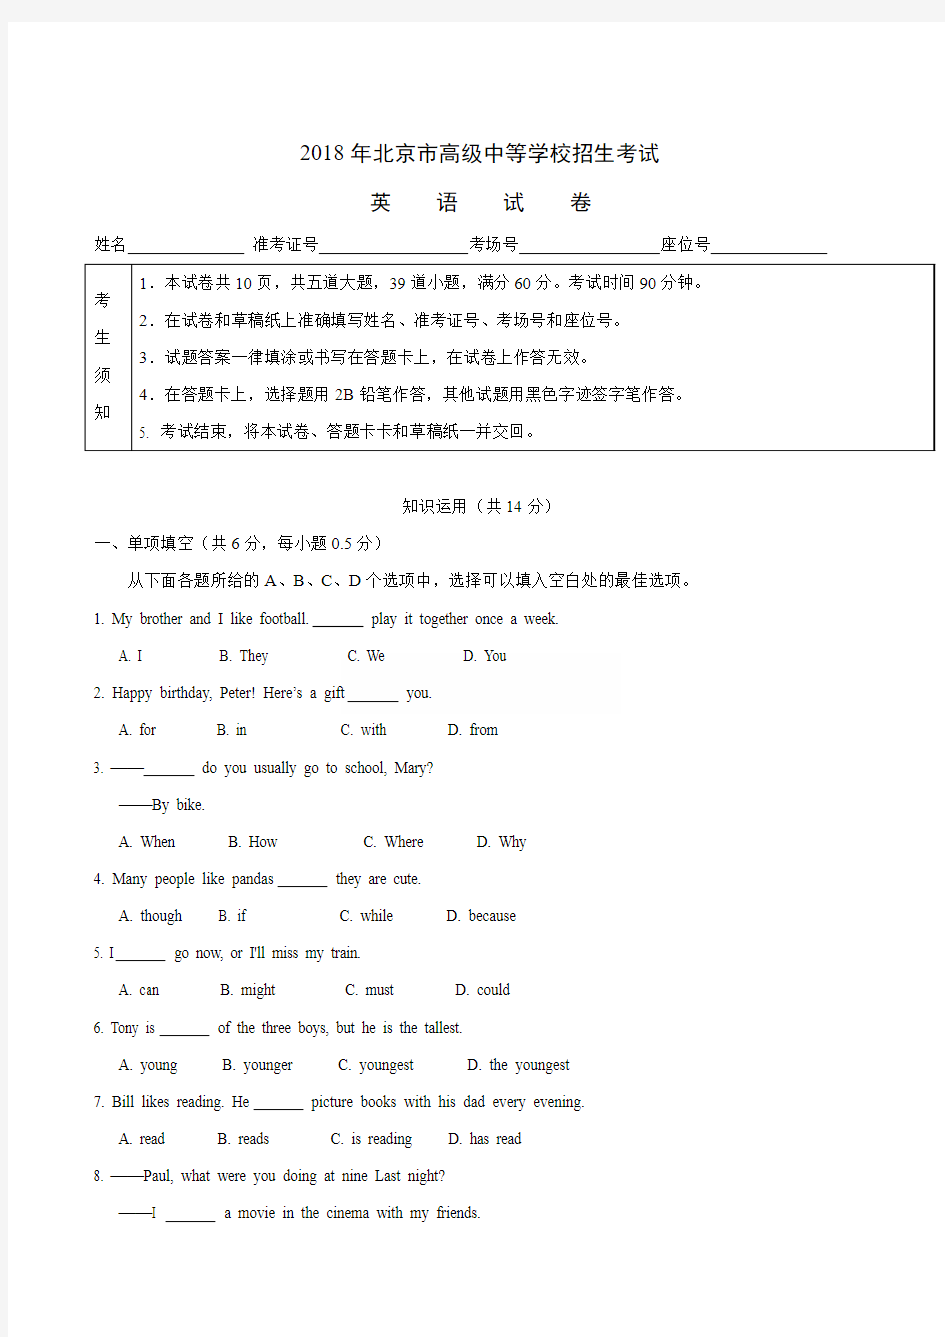 【真题】2018年北京市中考英语试卷含答案解析